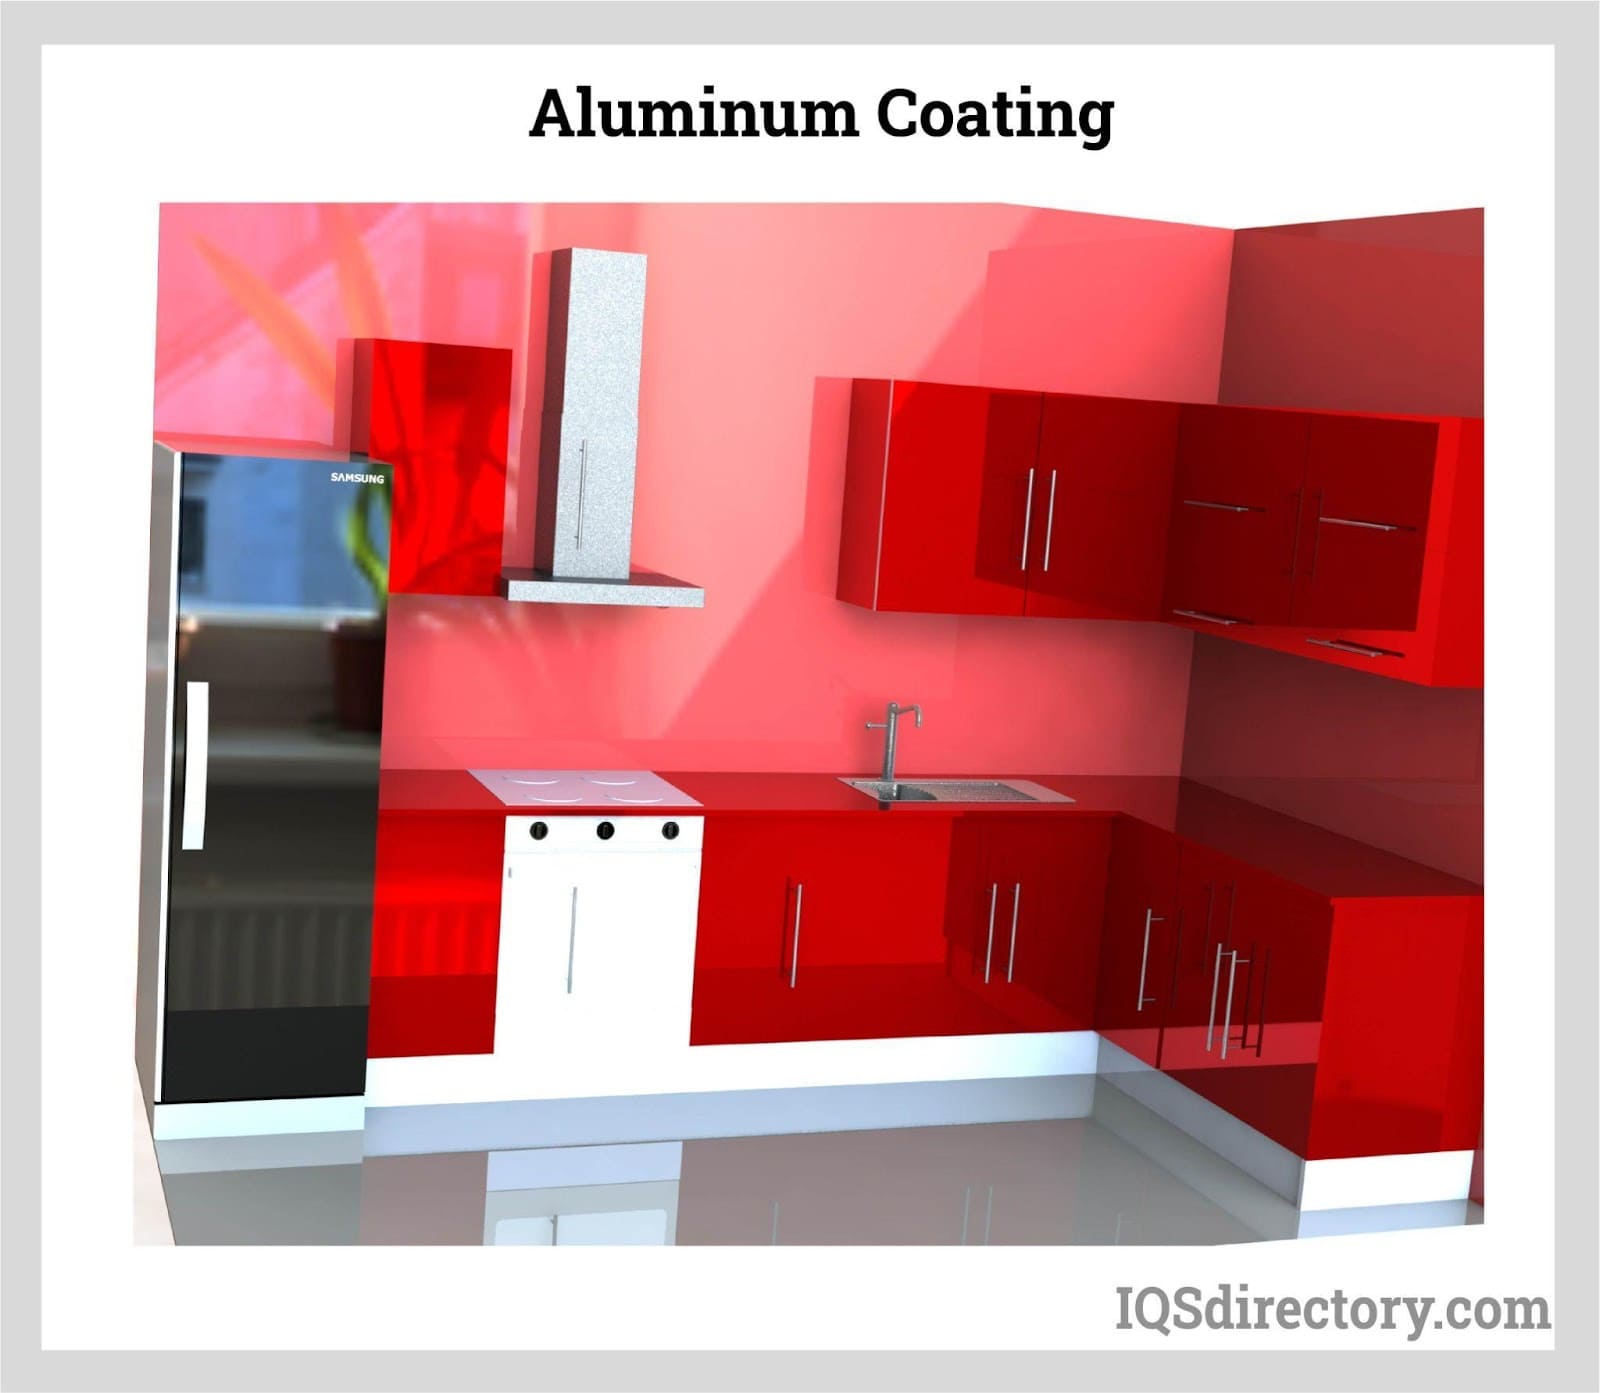 Aluminum Coating